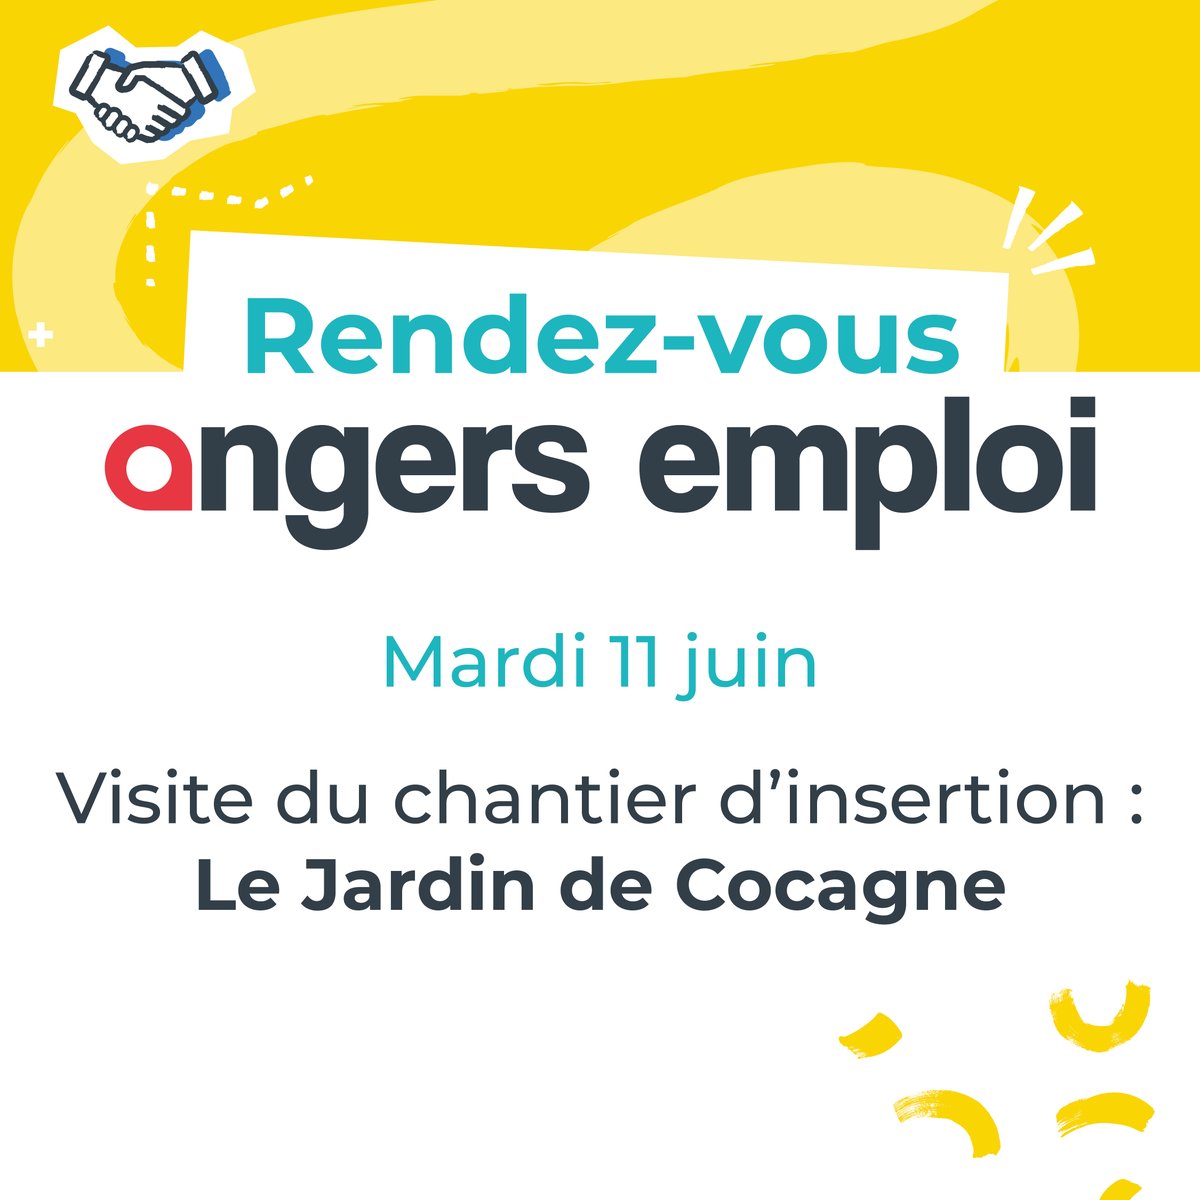 📢 Le mardi 11 juin, le Jardin de Cocagne Angevin vous invite à découvrir son activité lors d'une visite. Inscrivez-vous 👉 eventbrite.fr/e/billets-deco…

#EcoAngers #Angers